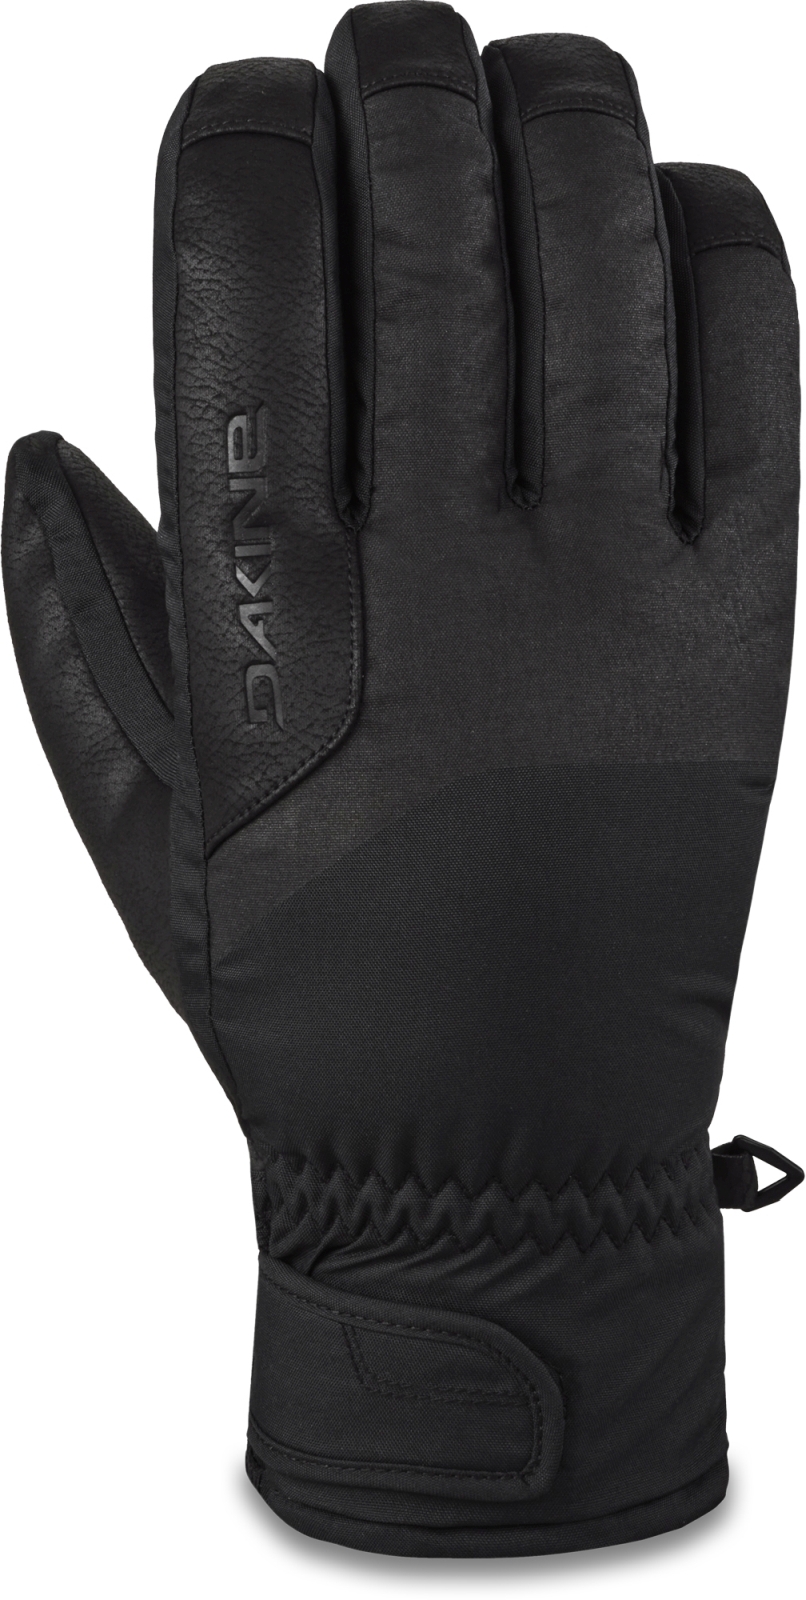 E-shop Dakine Nova Short Glove - black 8.0